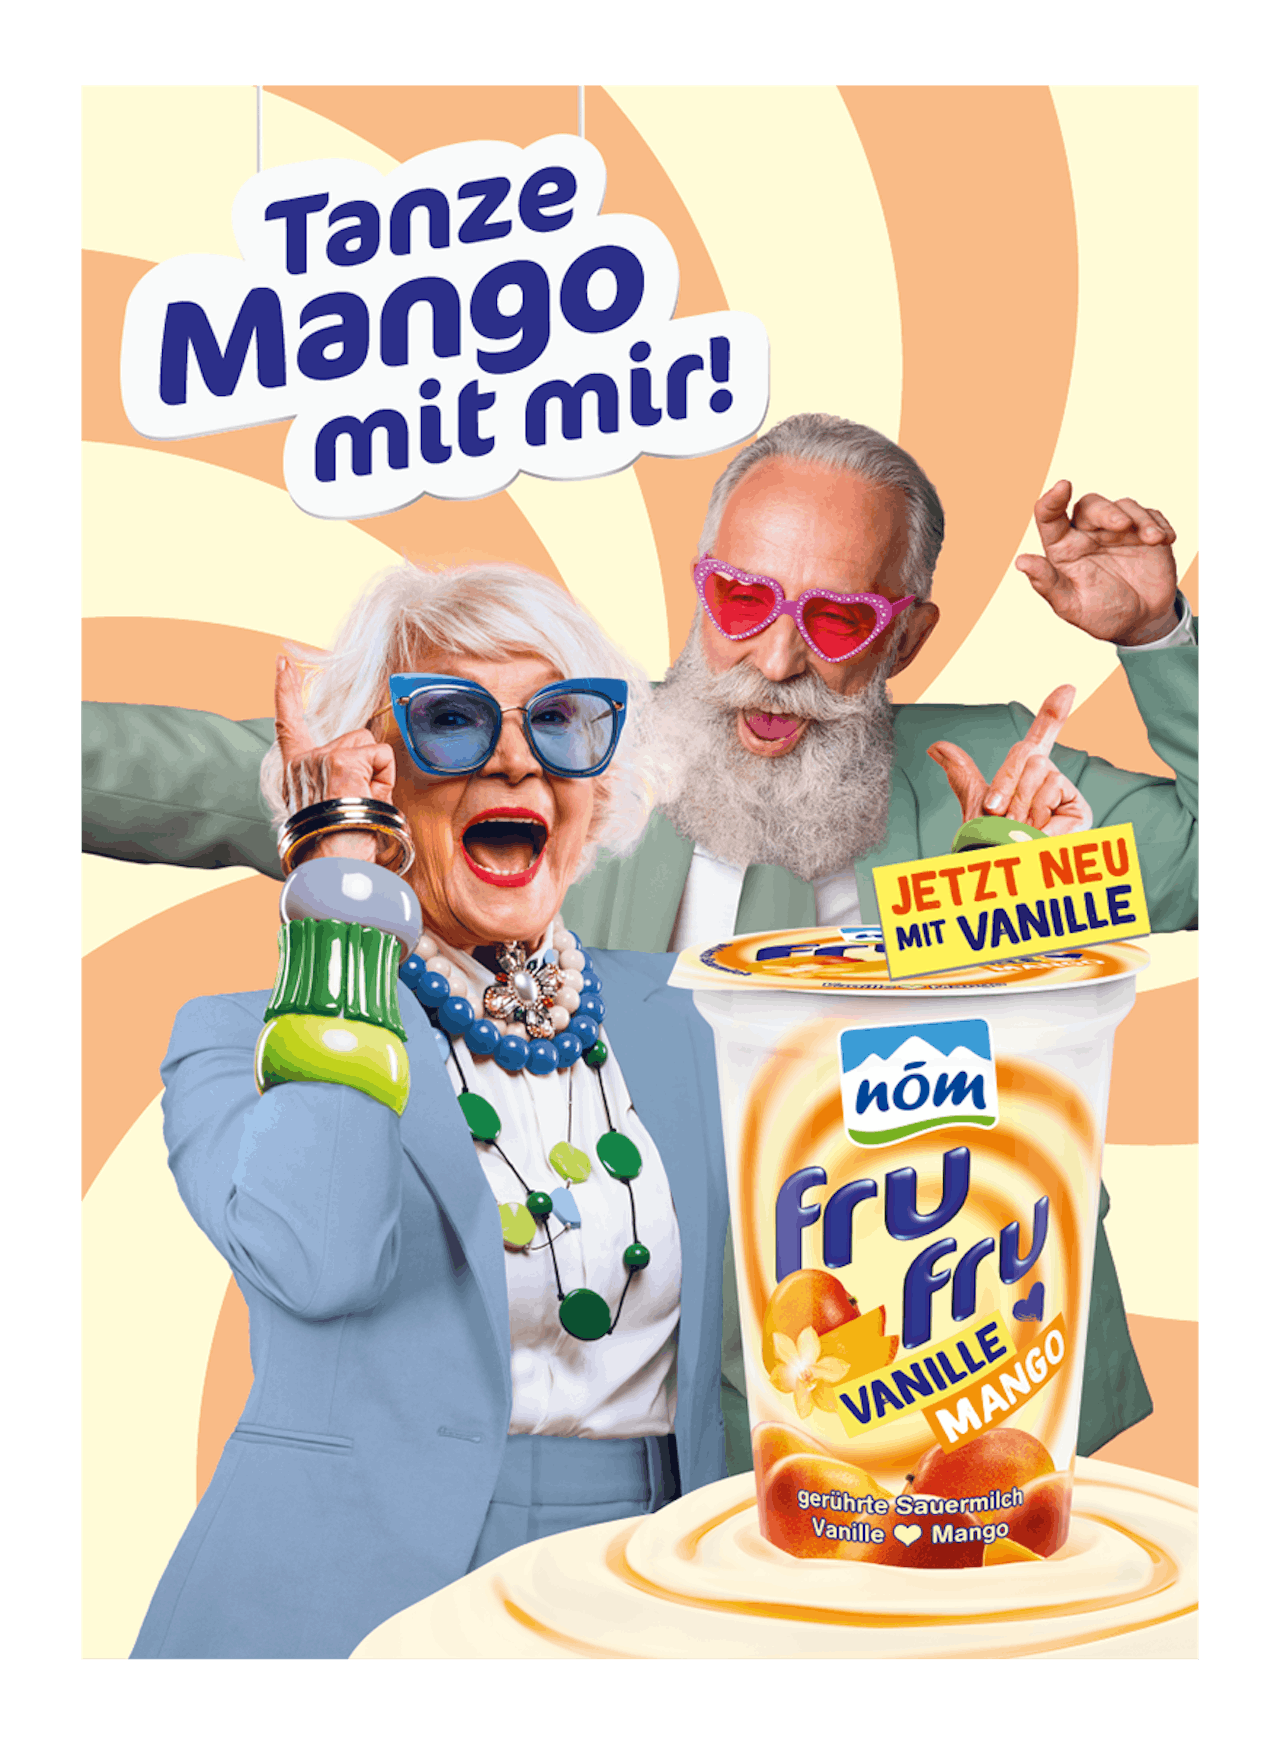 ein älterer Herr und eine ältere Dame vor einem Bunten Hintergrund hinter einem frufru Mango Vanille Tanze Mango mit mir